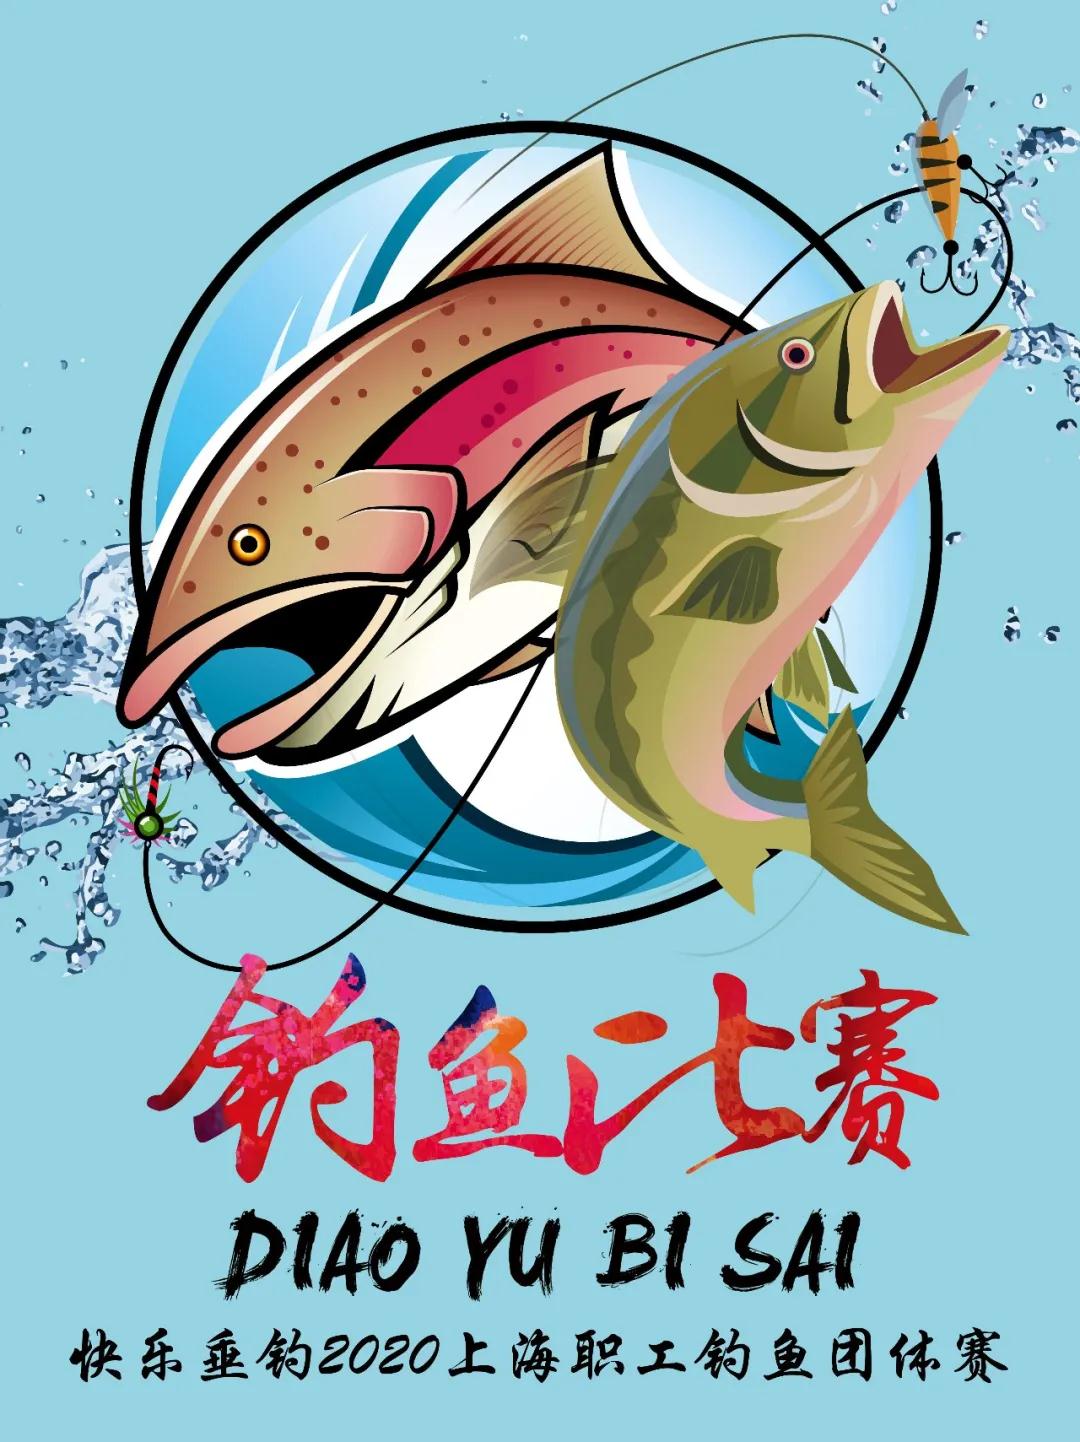 2020年上海职工团体钓鱼赛开始报名啦！ 资讯动态 第1张